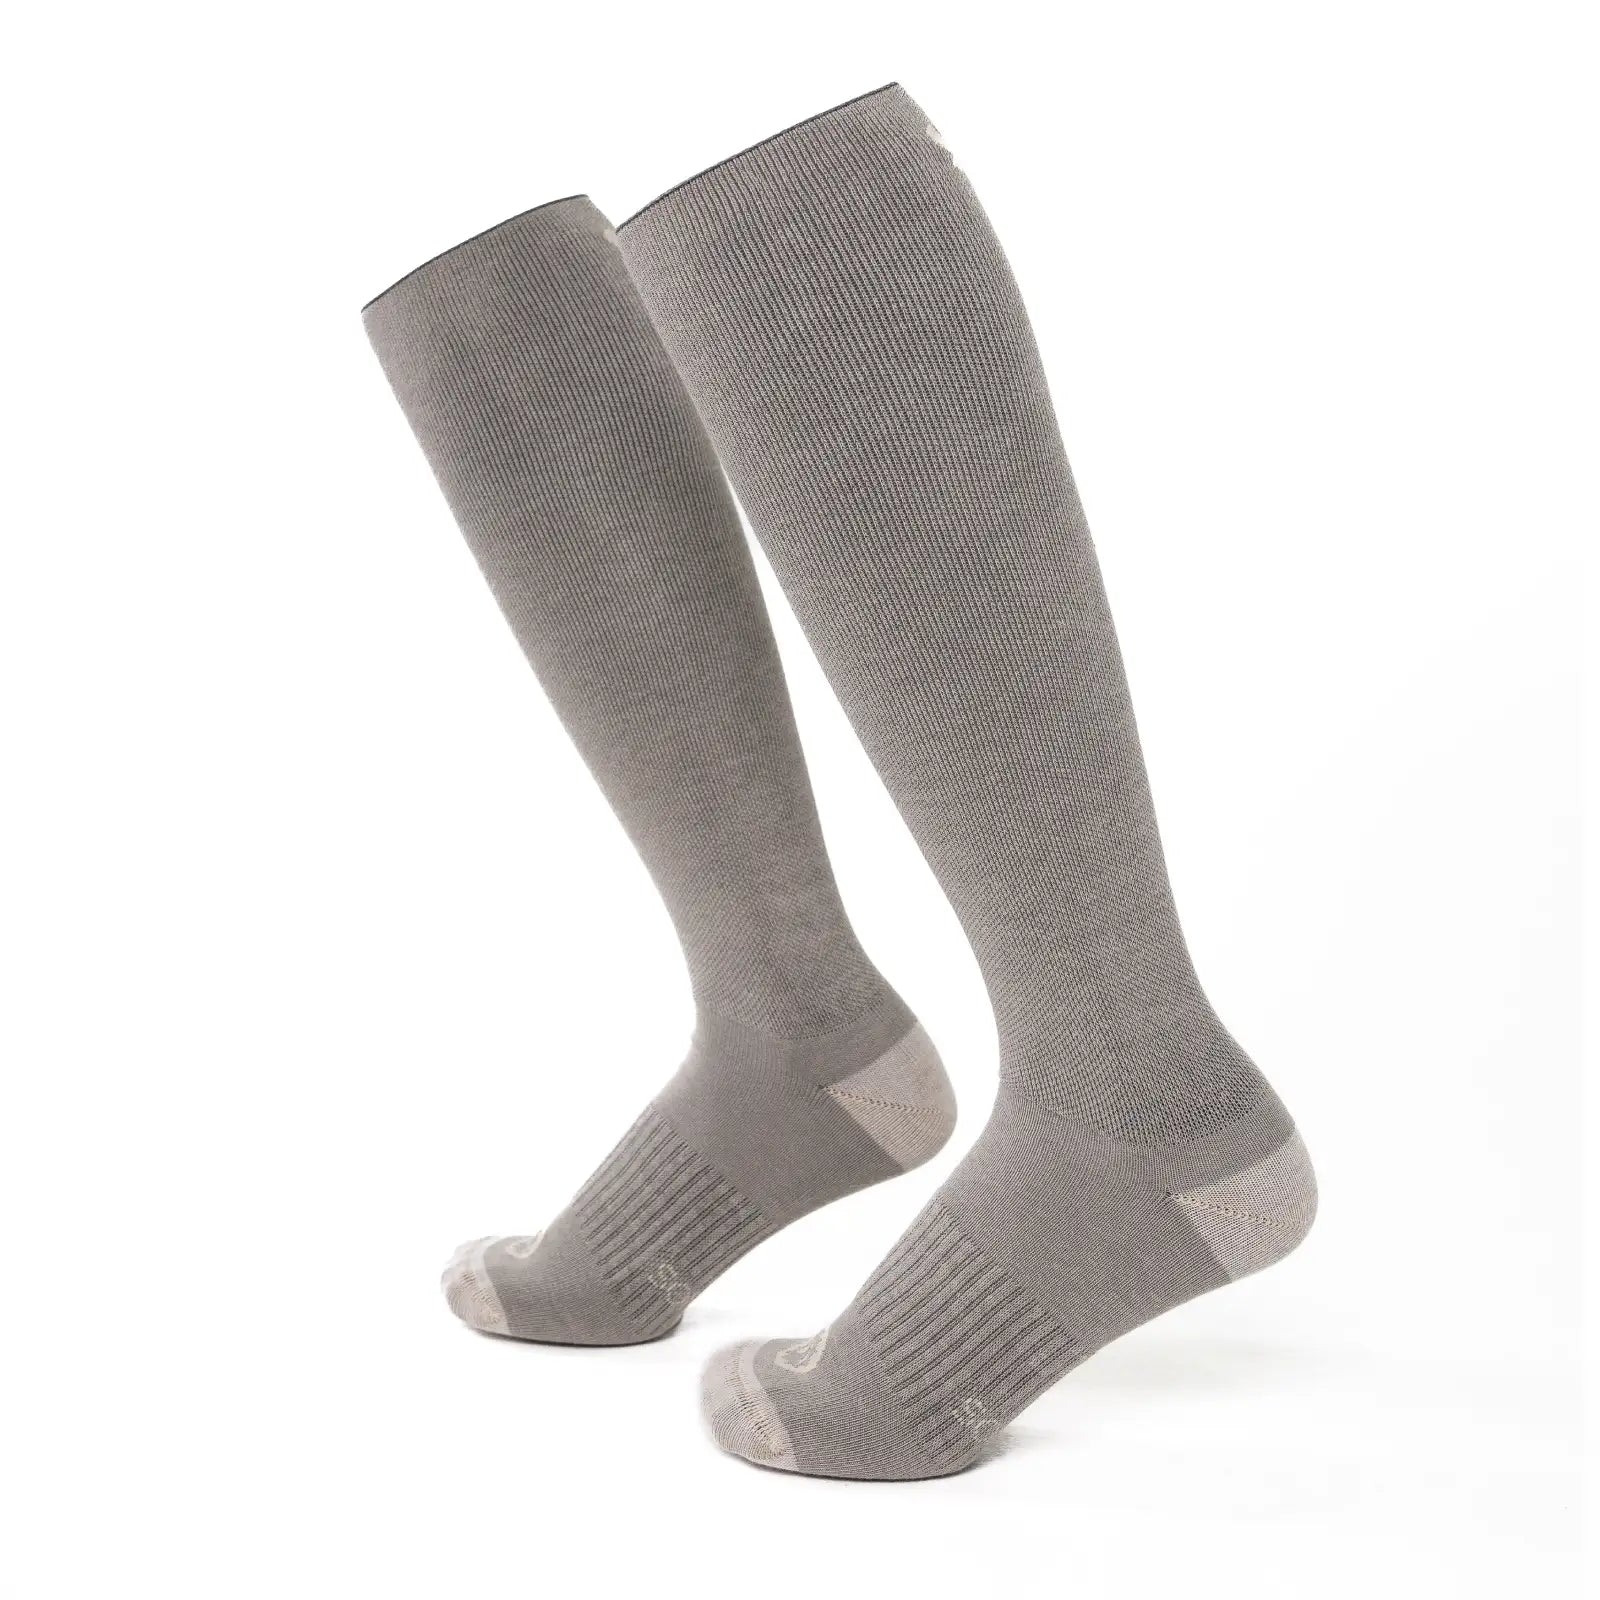 Par de calcetines altos compresivos de algodón color gris y beige